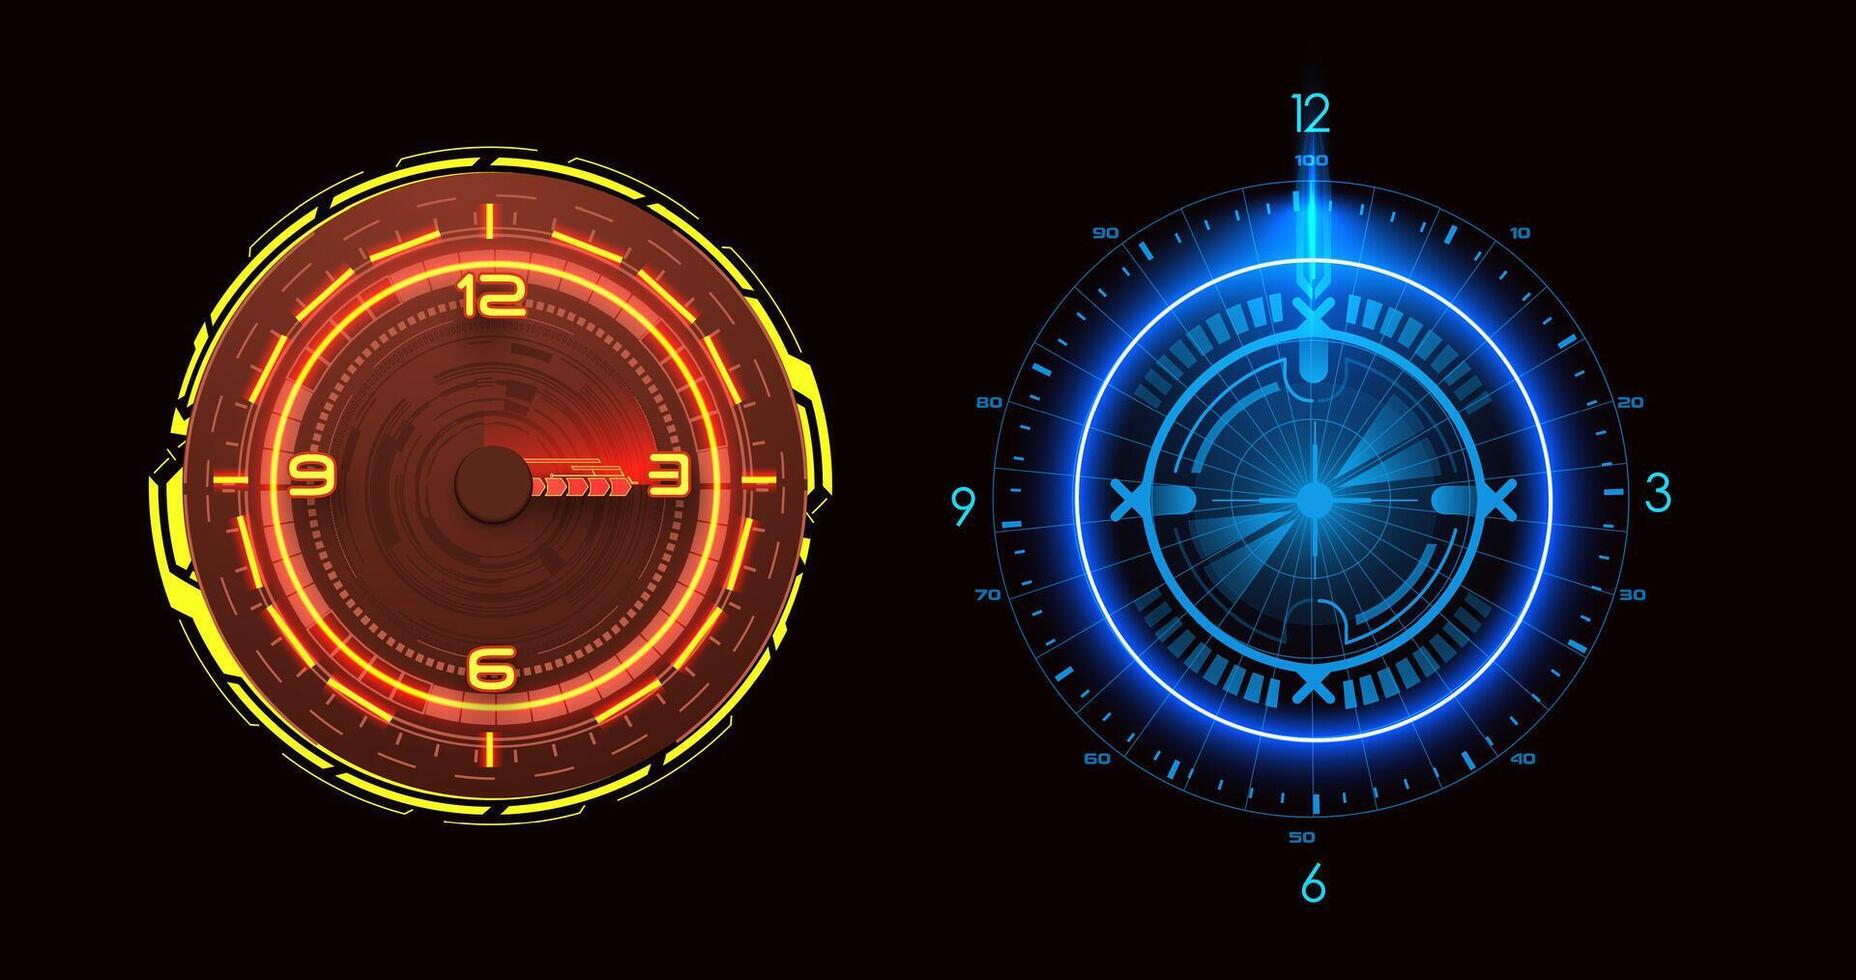 dos vibrante ciencia ficción relojes resplandor en rojo y azul matices, exhibiendo futurista cronometraje. usado a indicar hora y medida tiempo. vector ilustración